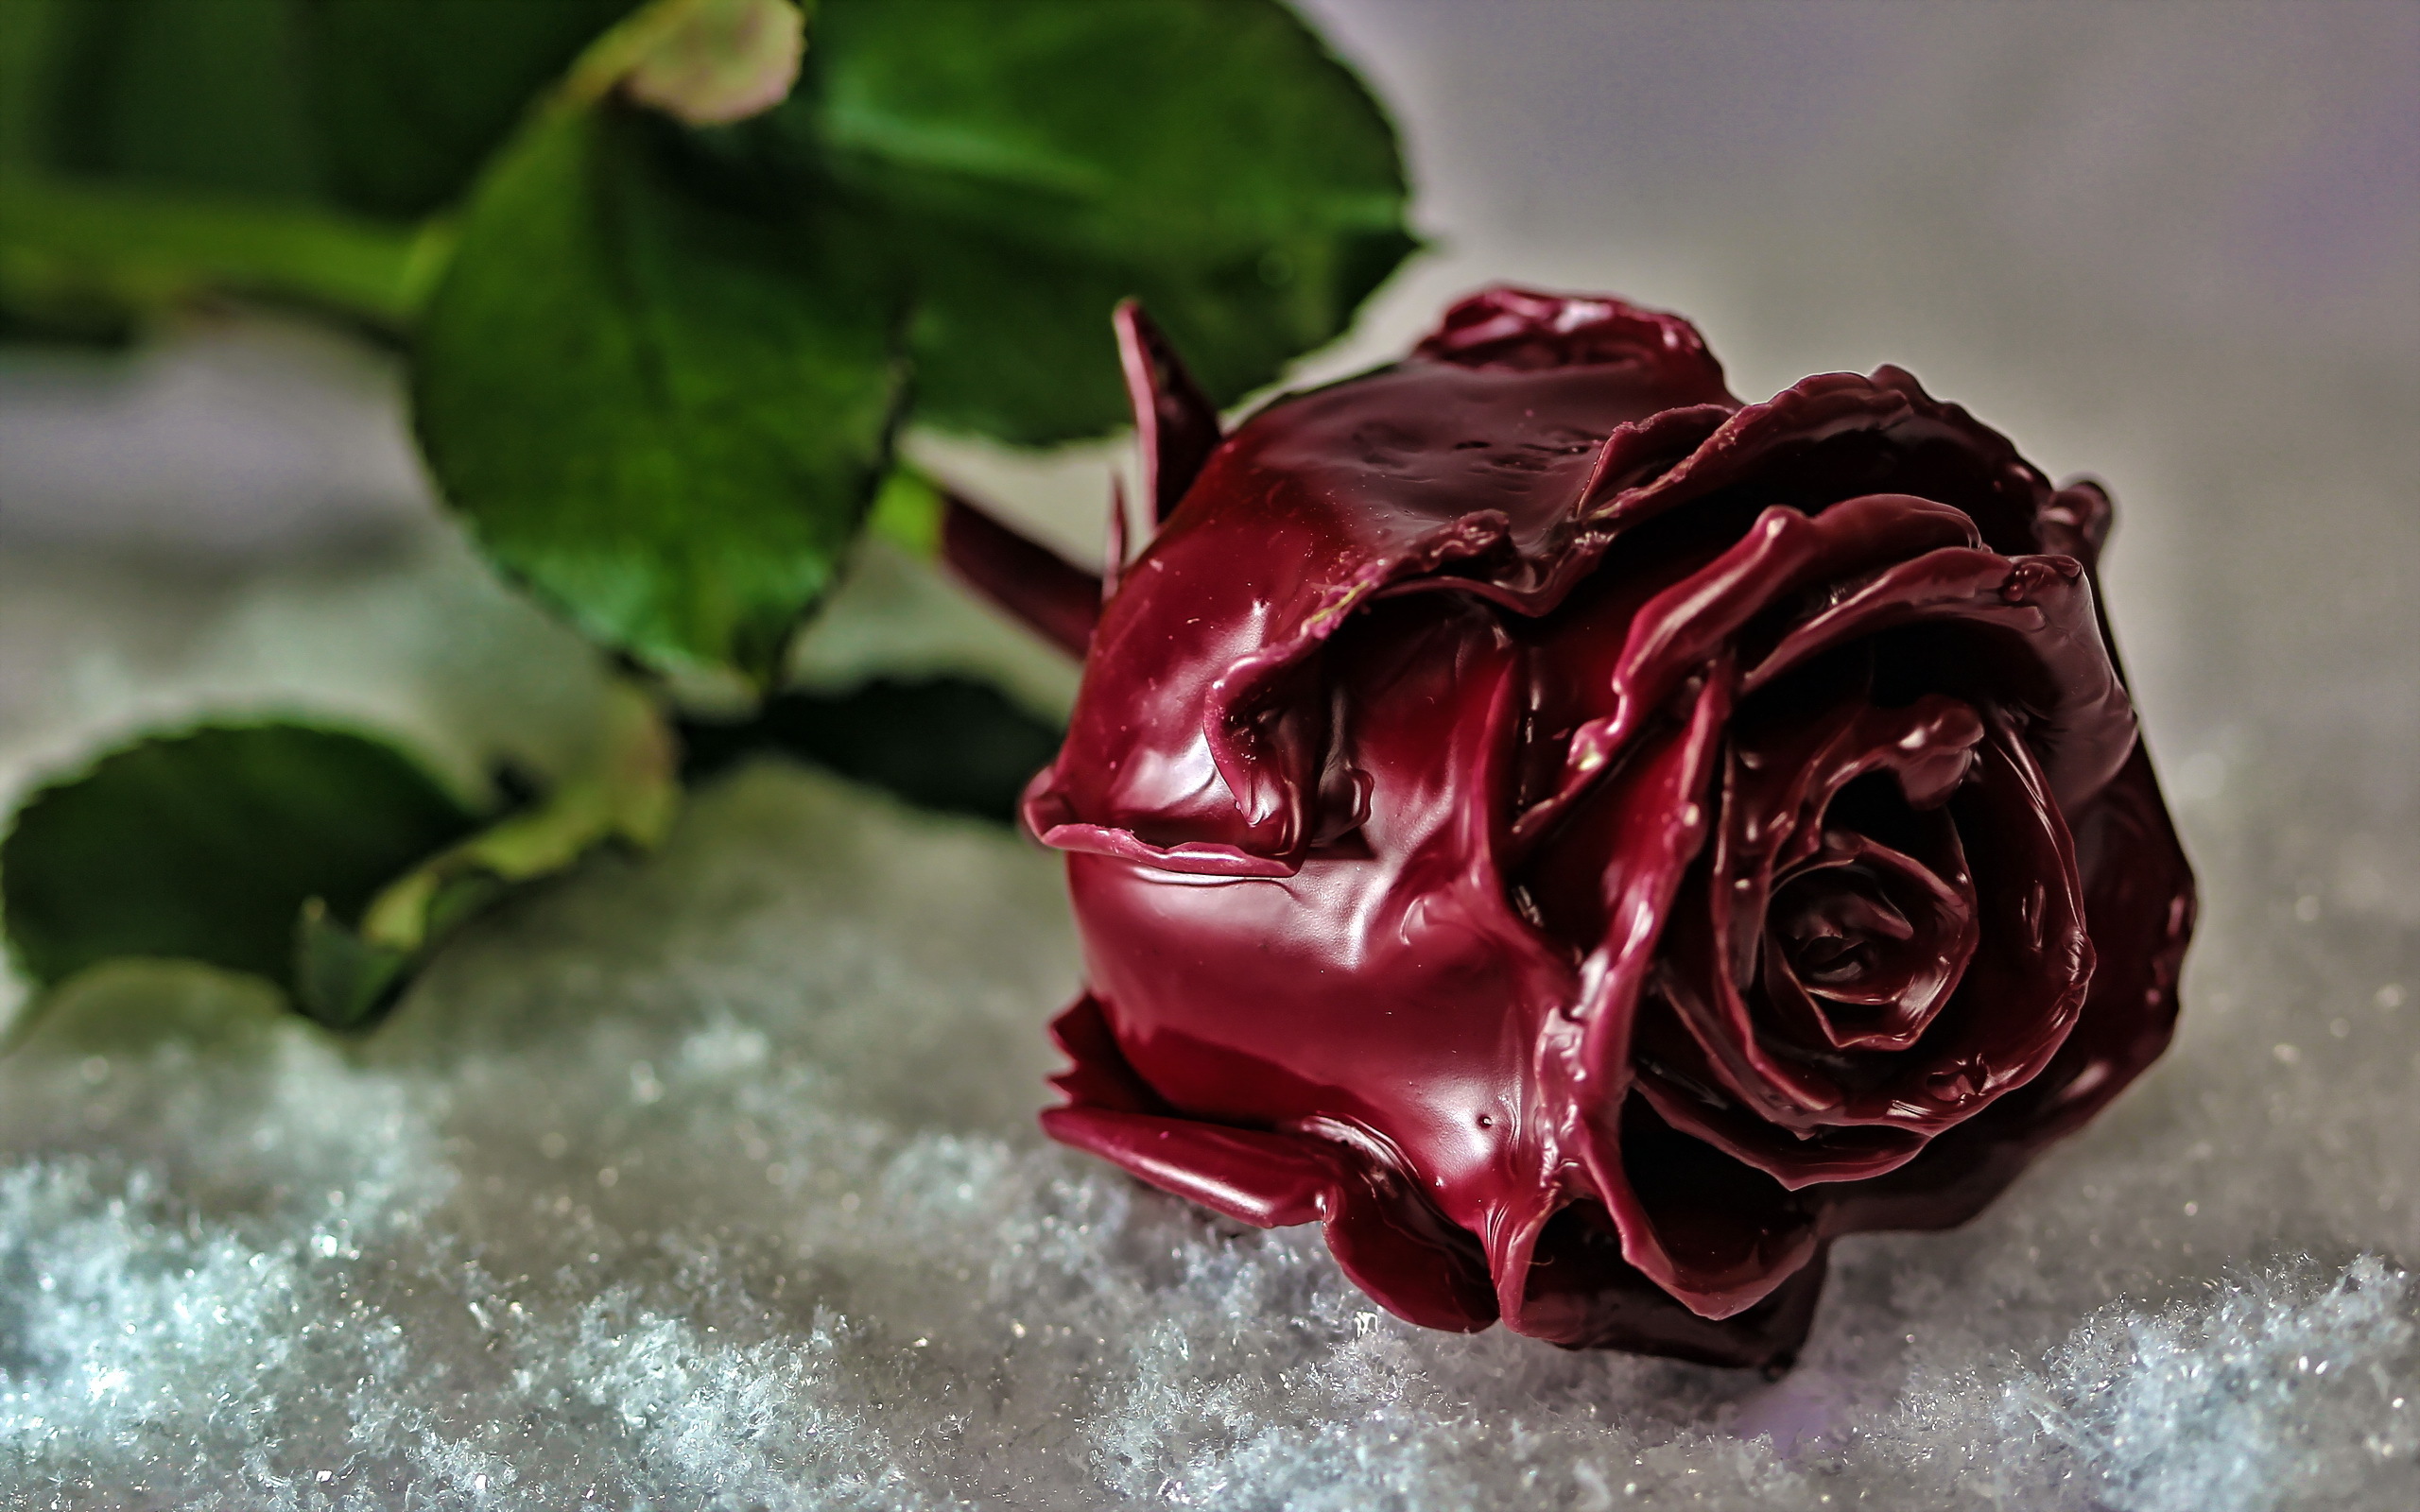 красивые розы картинки хорошего качества на заставку